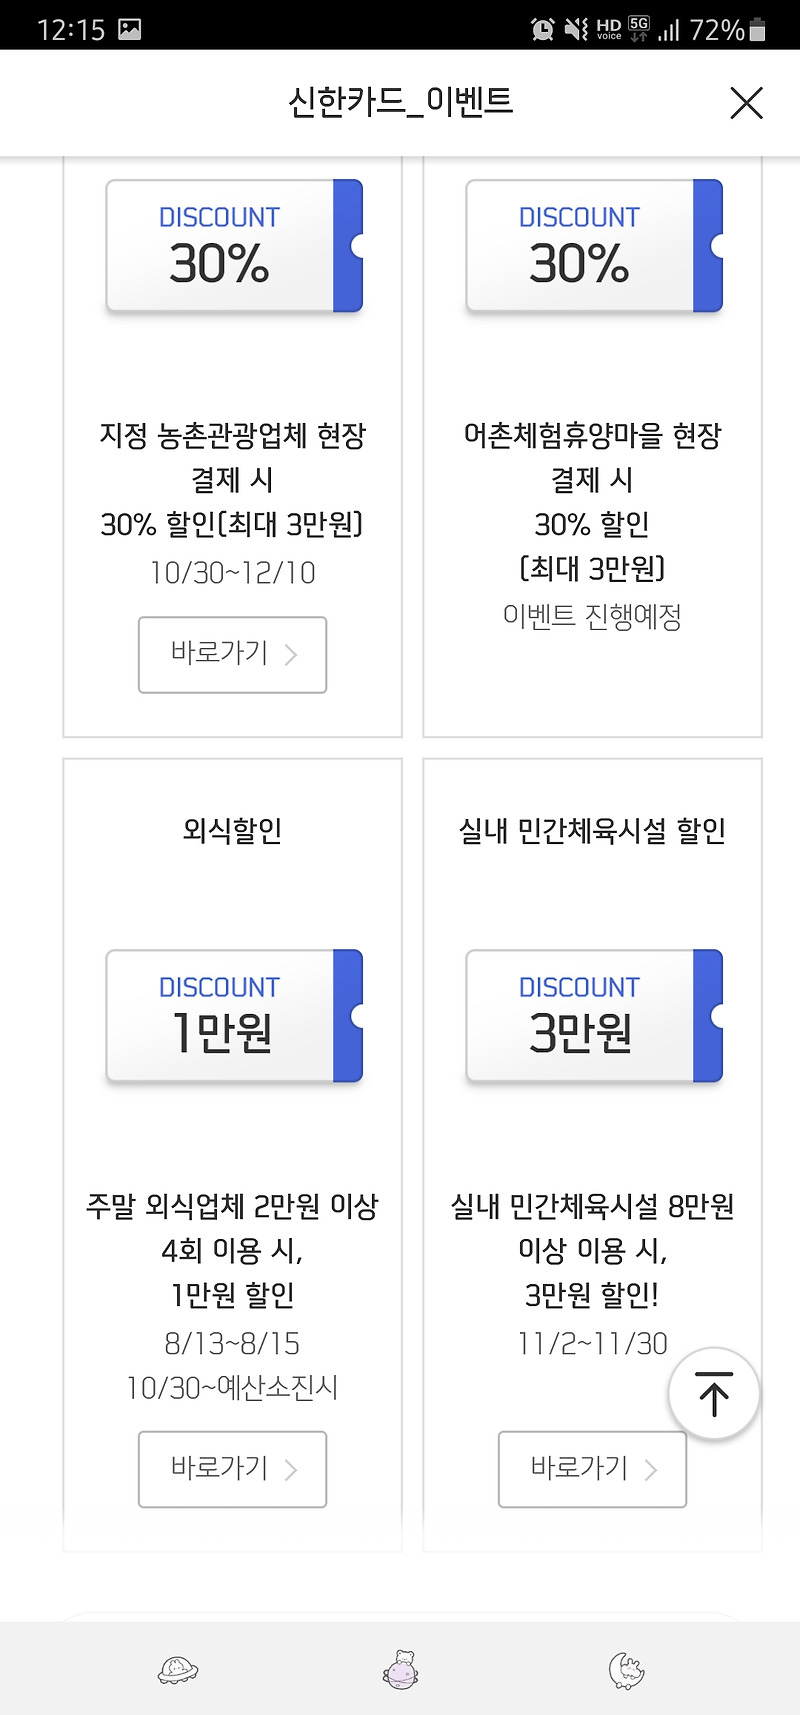 신한카드 신한페이판 앱에서 실내체육시설 3만원 환급 쿠폰 신청하기